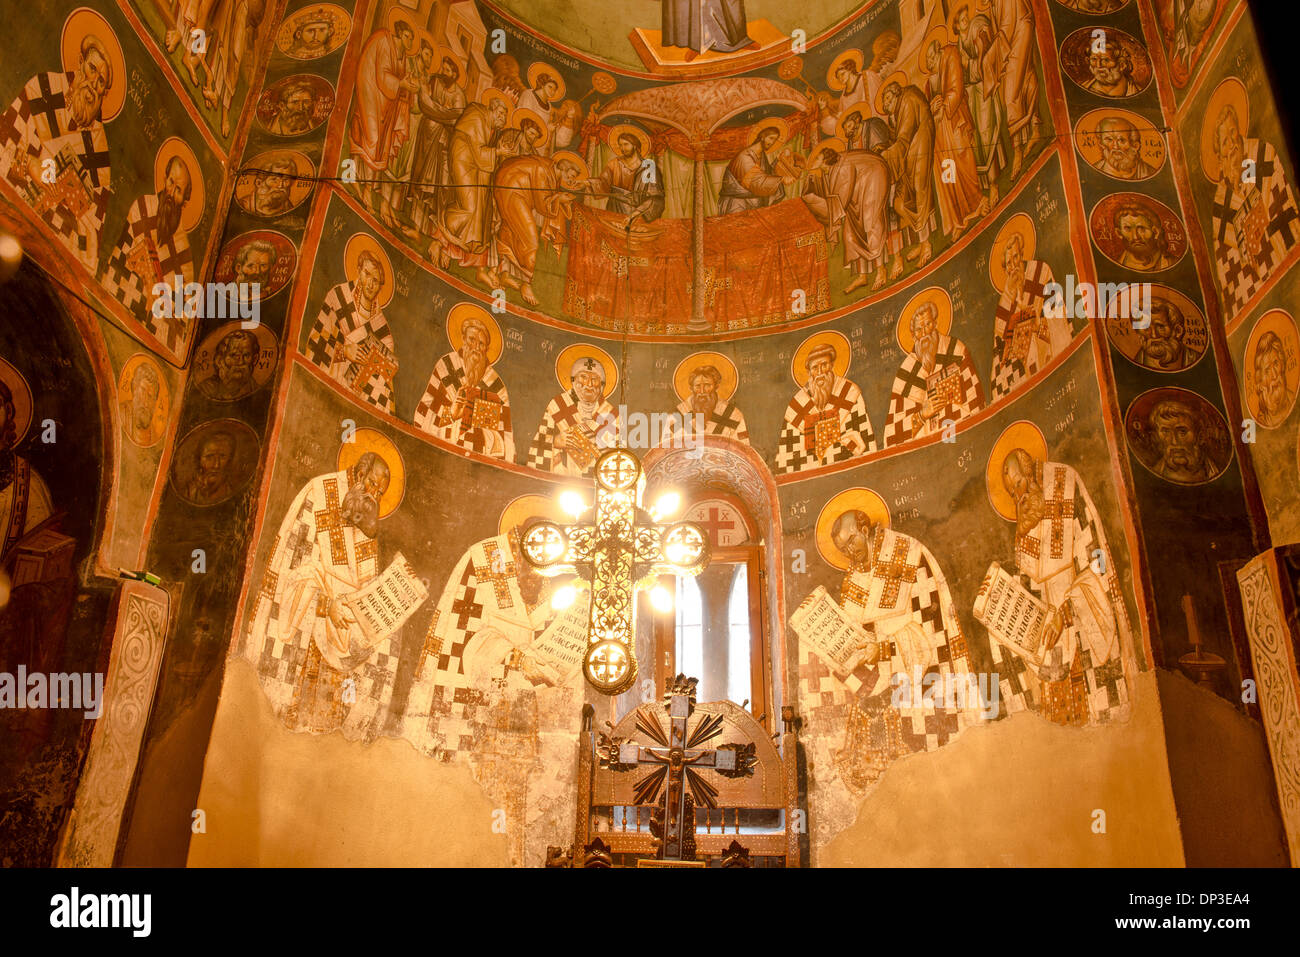 Frescos cruz iluminada por el sol de la Santa Madre de Dios Peribleptos Iglesia Macedonia Ohrid construido en 1295 ejemplos de frescos bizantinos mundo Foto de stock